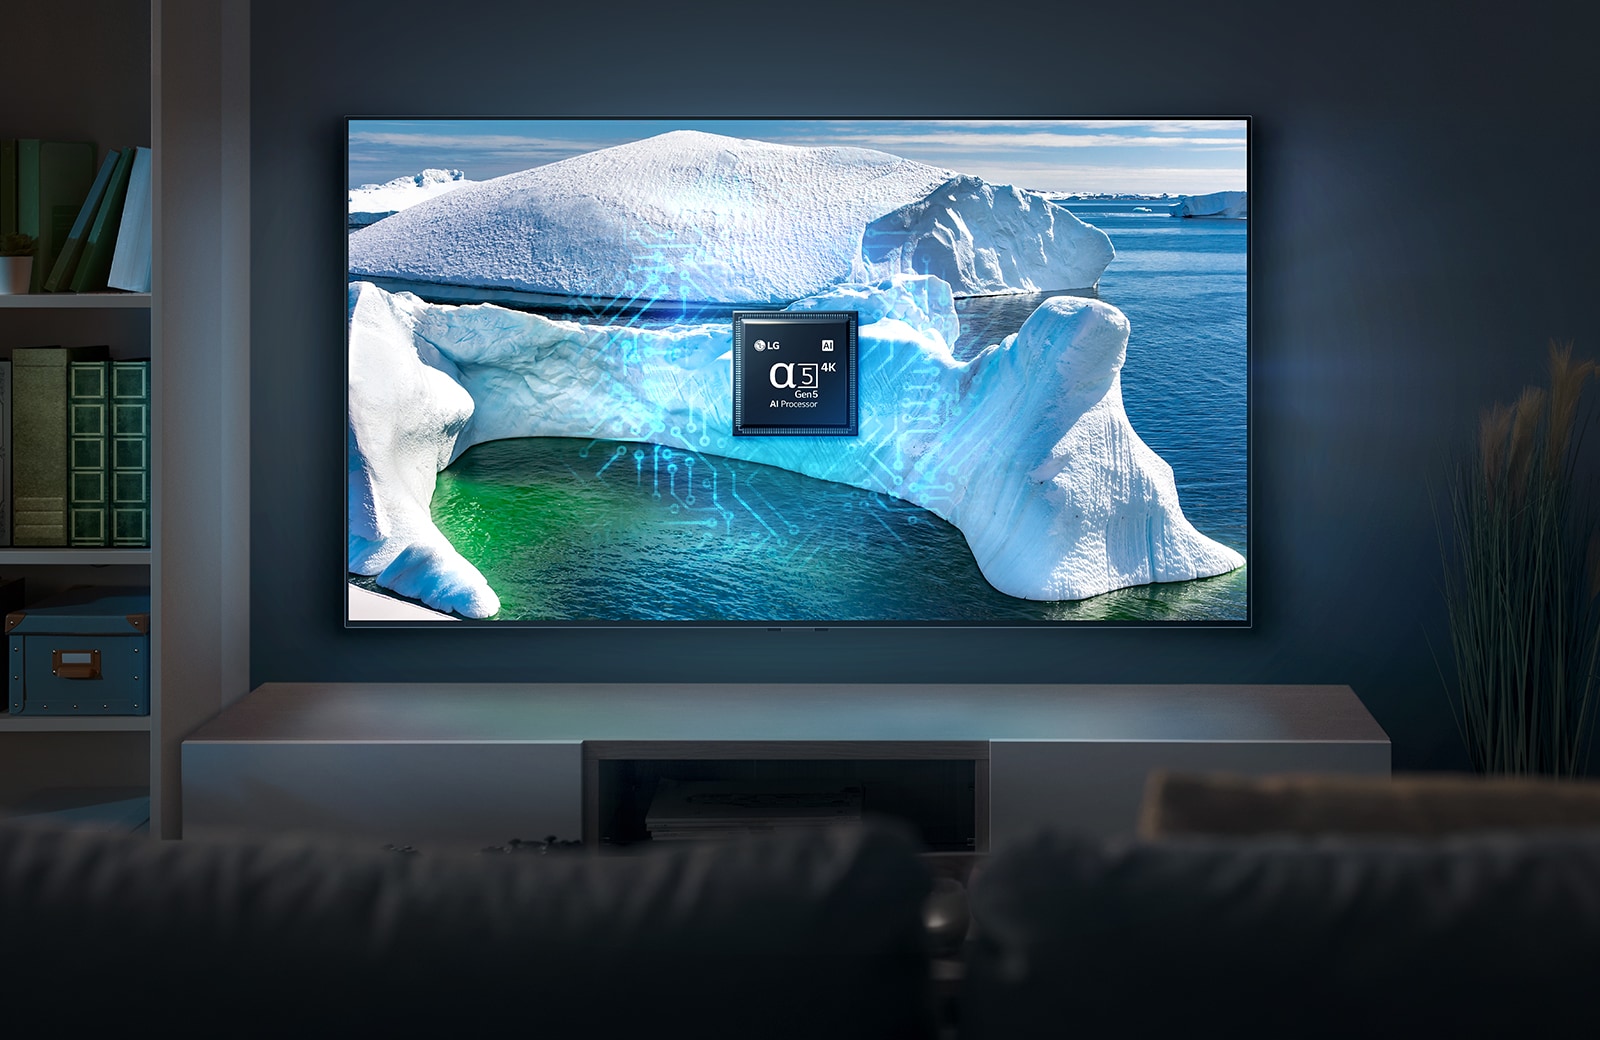 Sông băng màu xanh được hiển thị trên màn hình TV. TV được đặt trong phòng khách rộng với nền màu xanh.